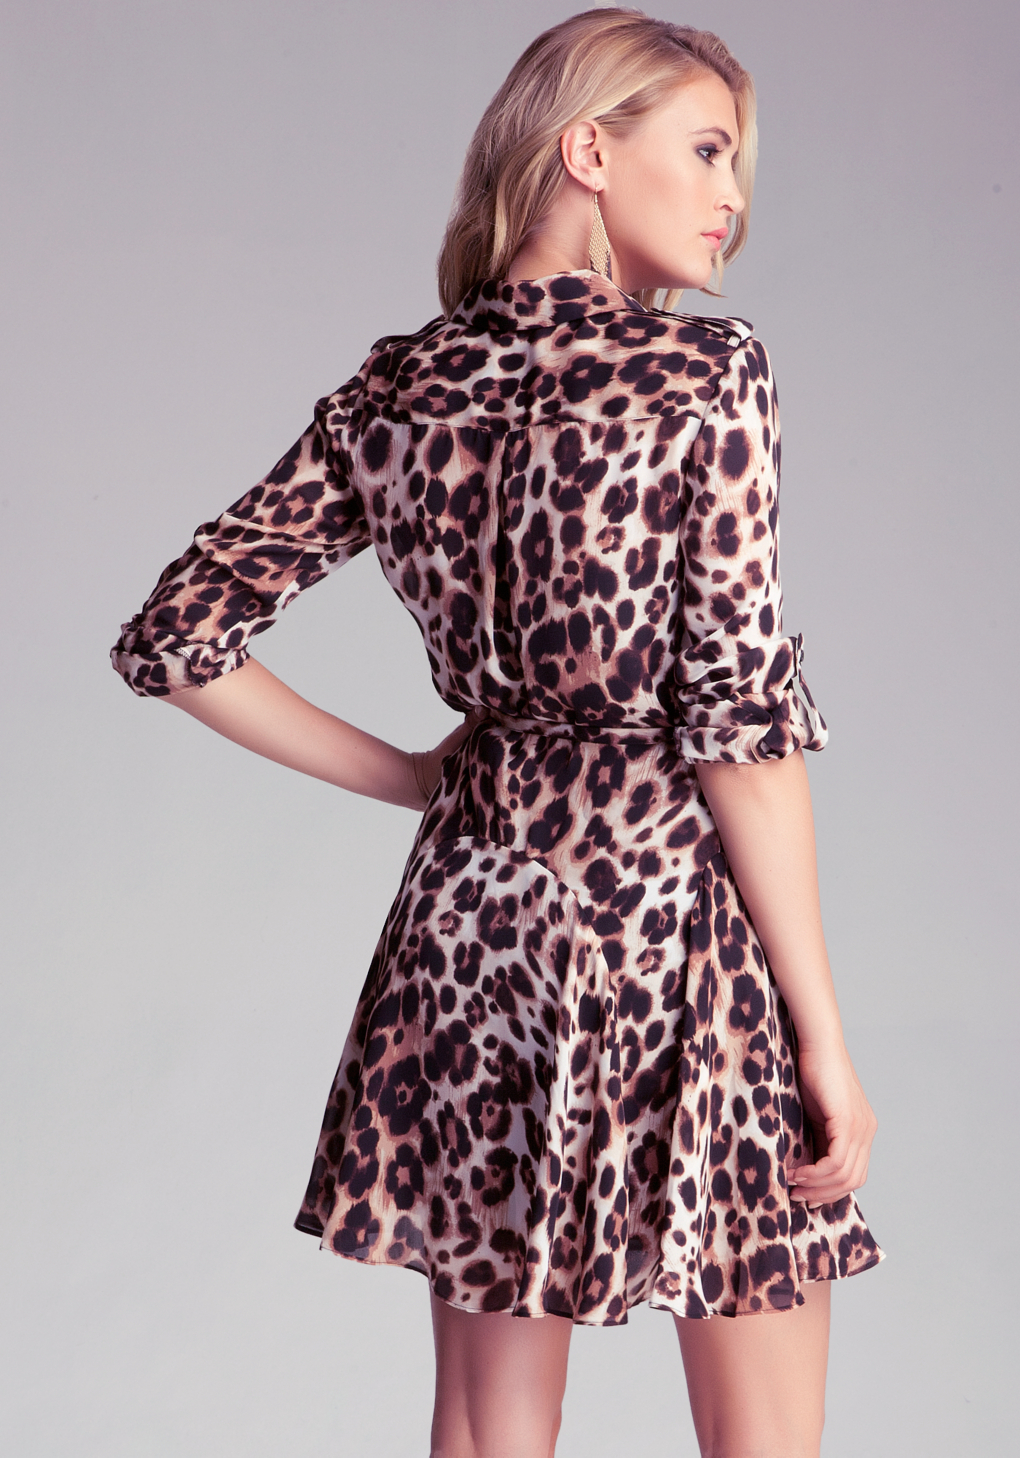 bebe leopard dress